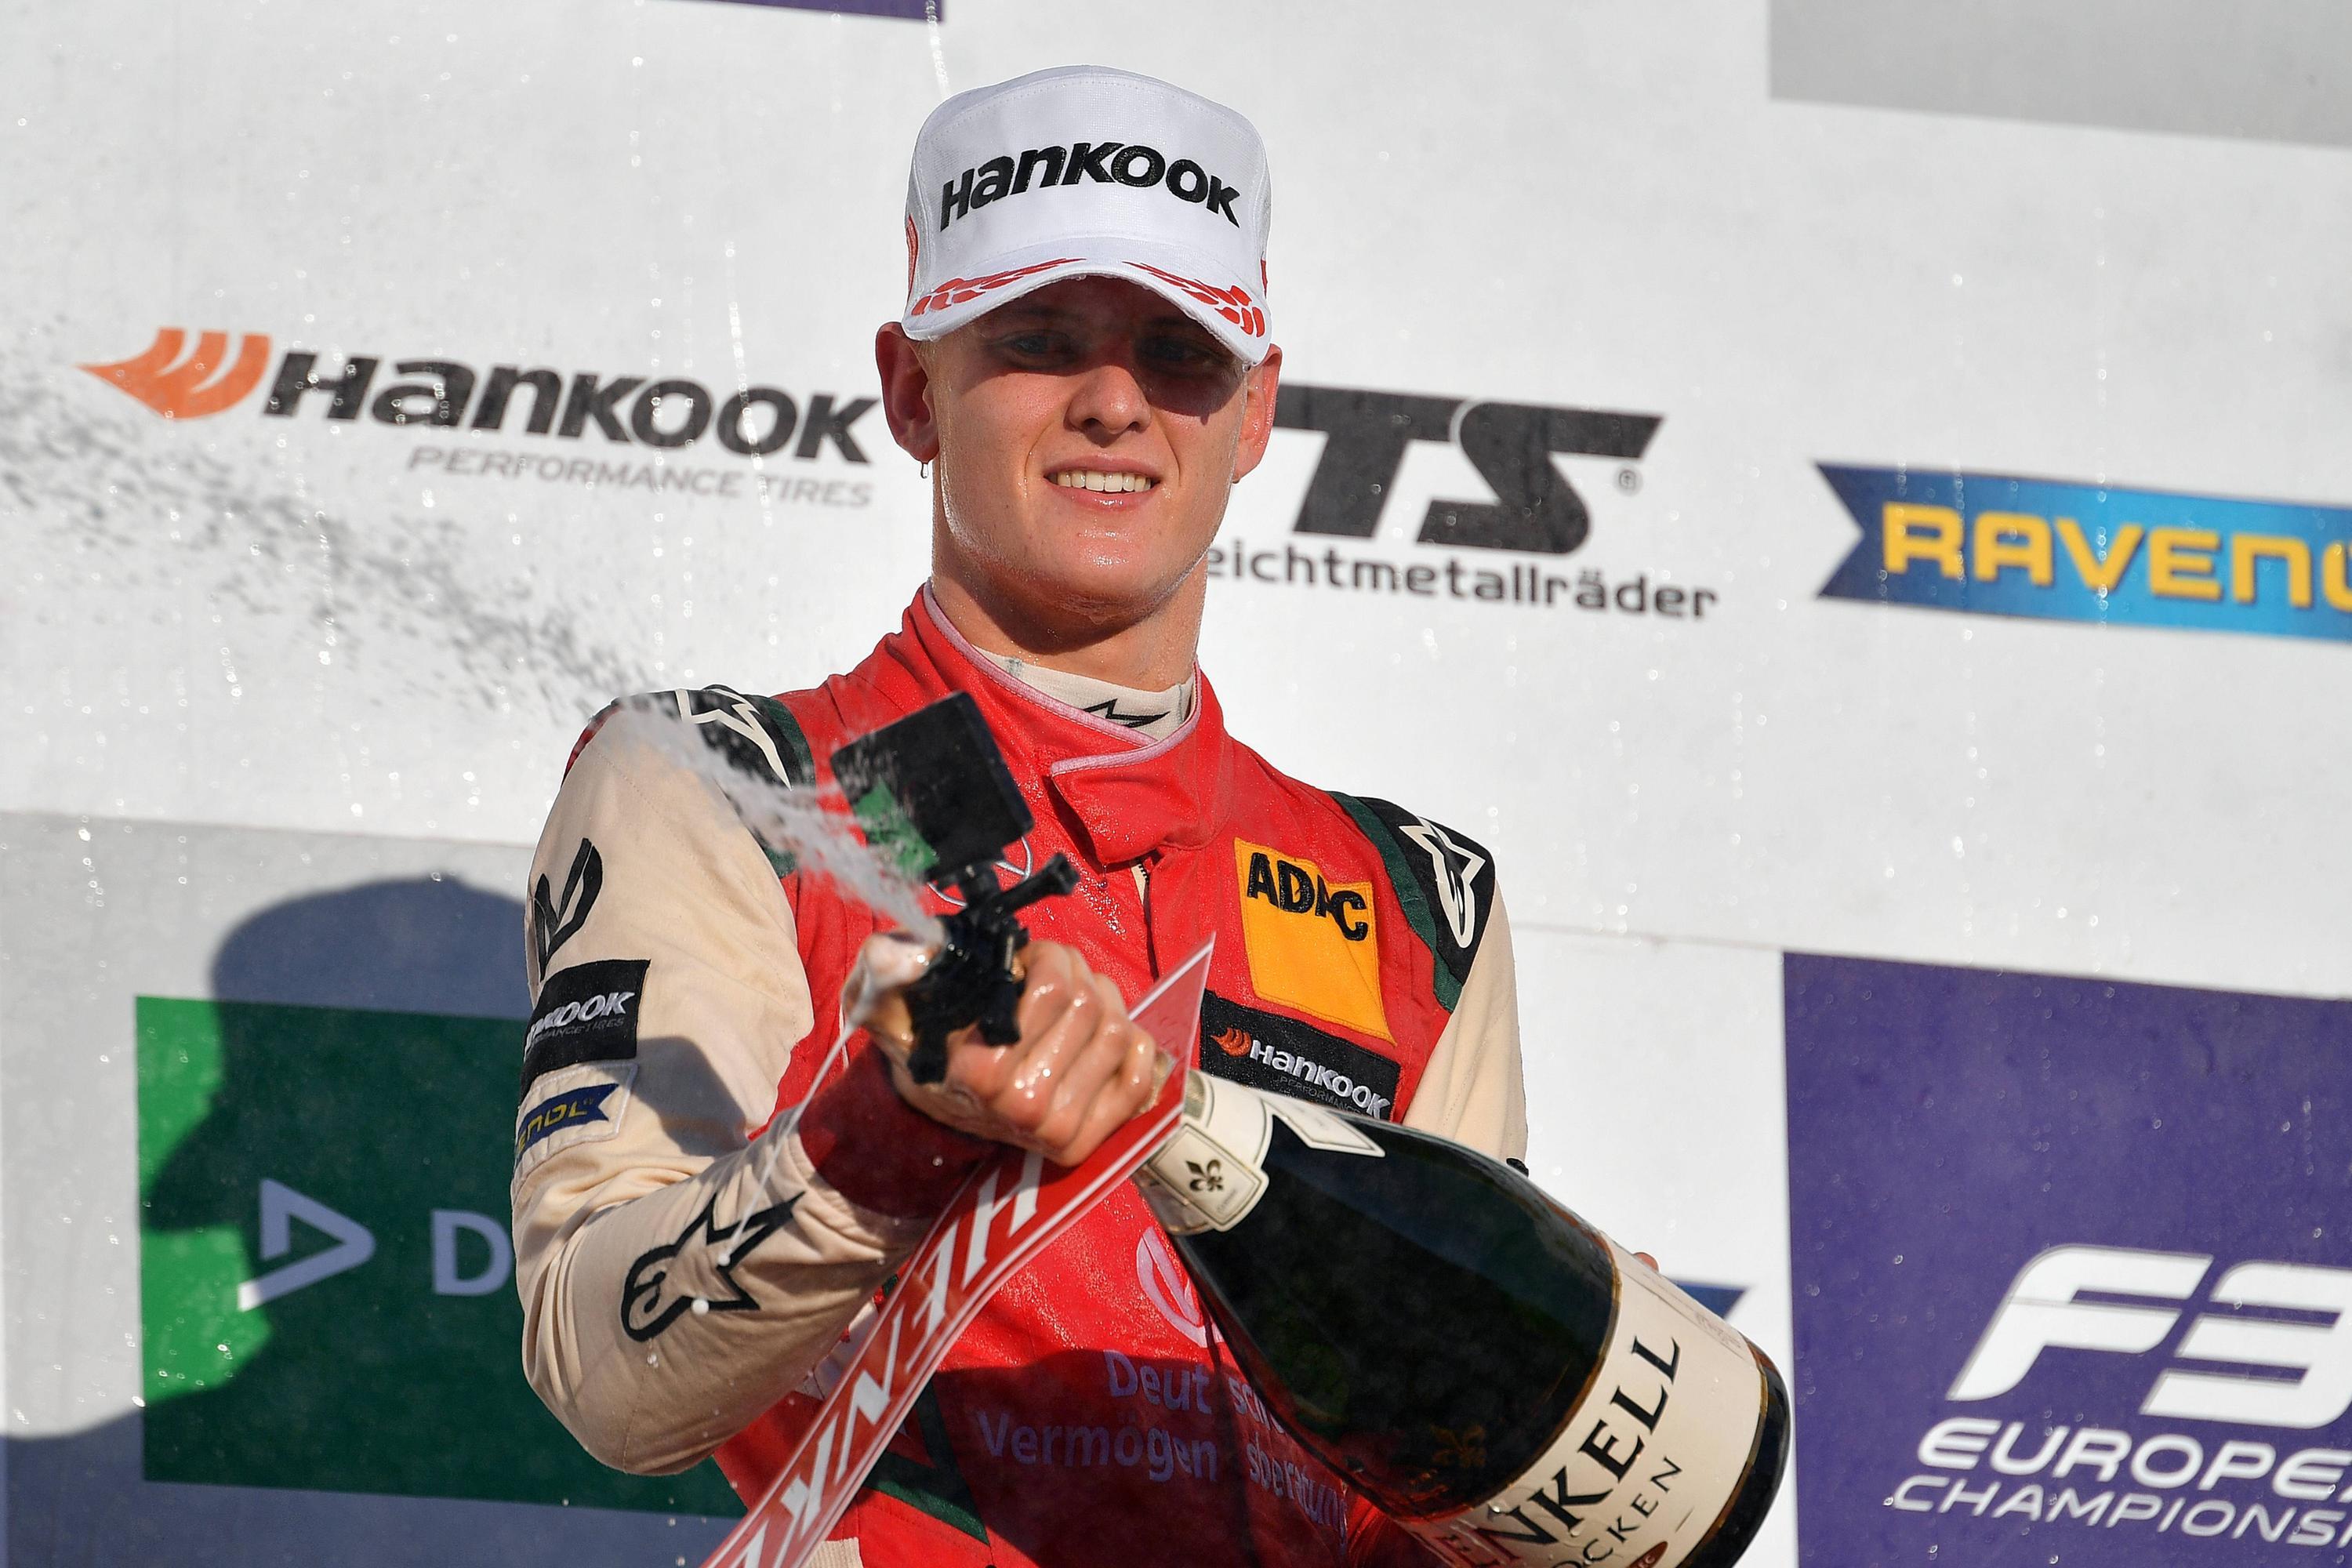 Piloto Mick Schumacher participará en la Carrera de Campeones 2019 en México